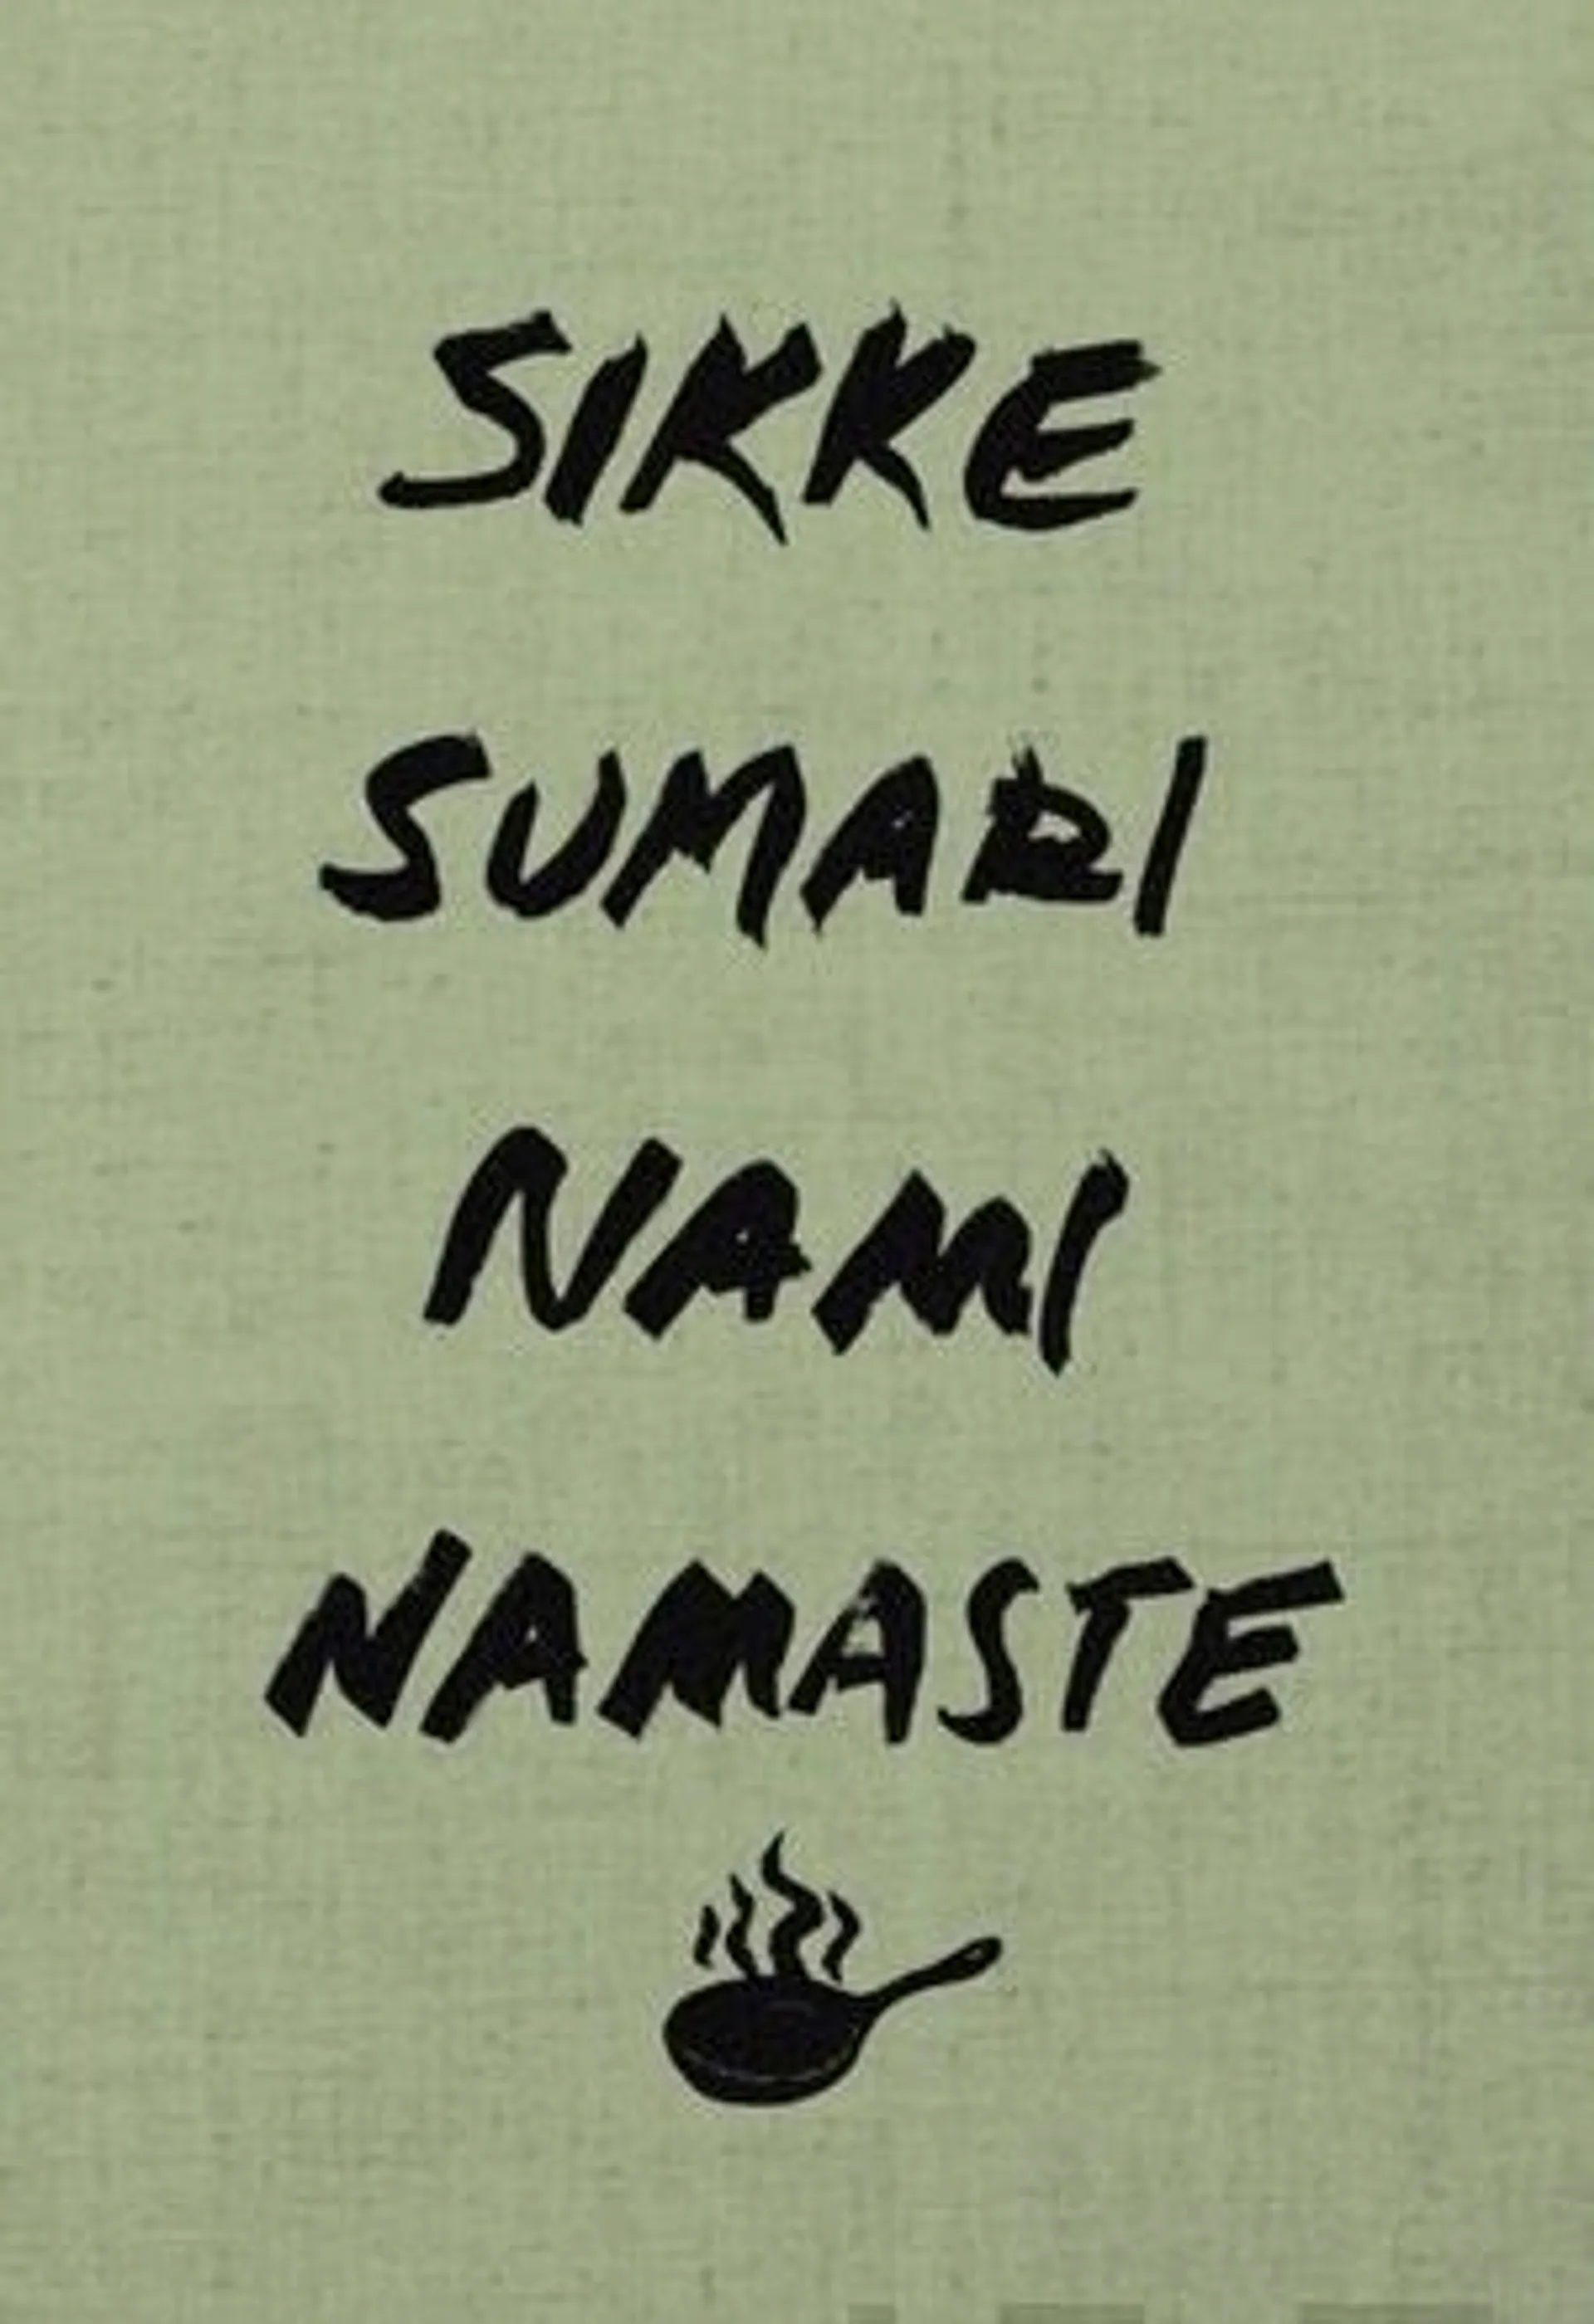 Sumari, Nami Namaste